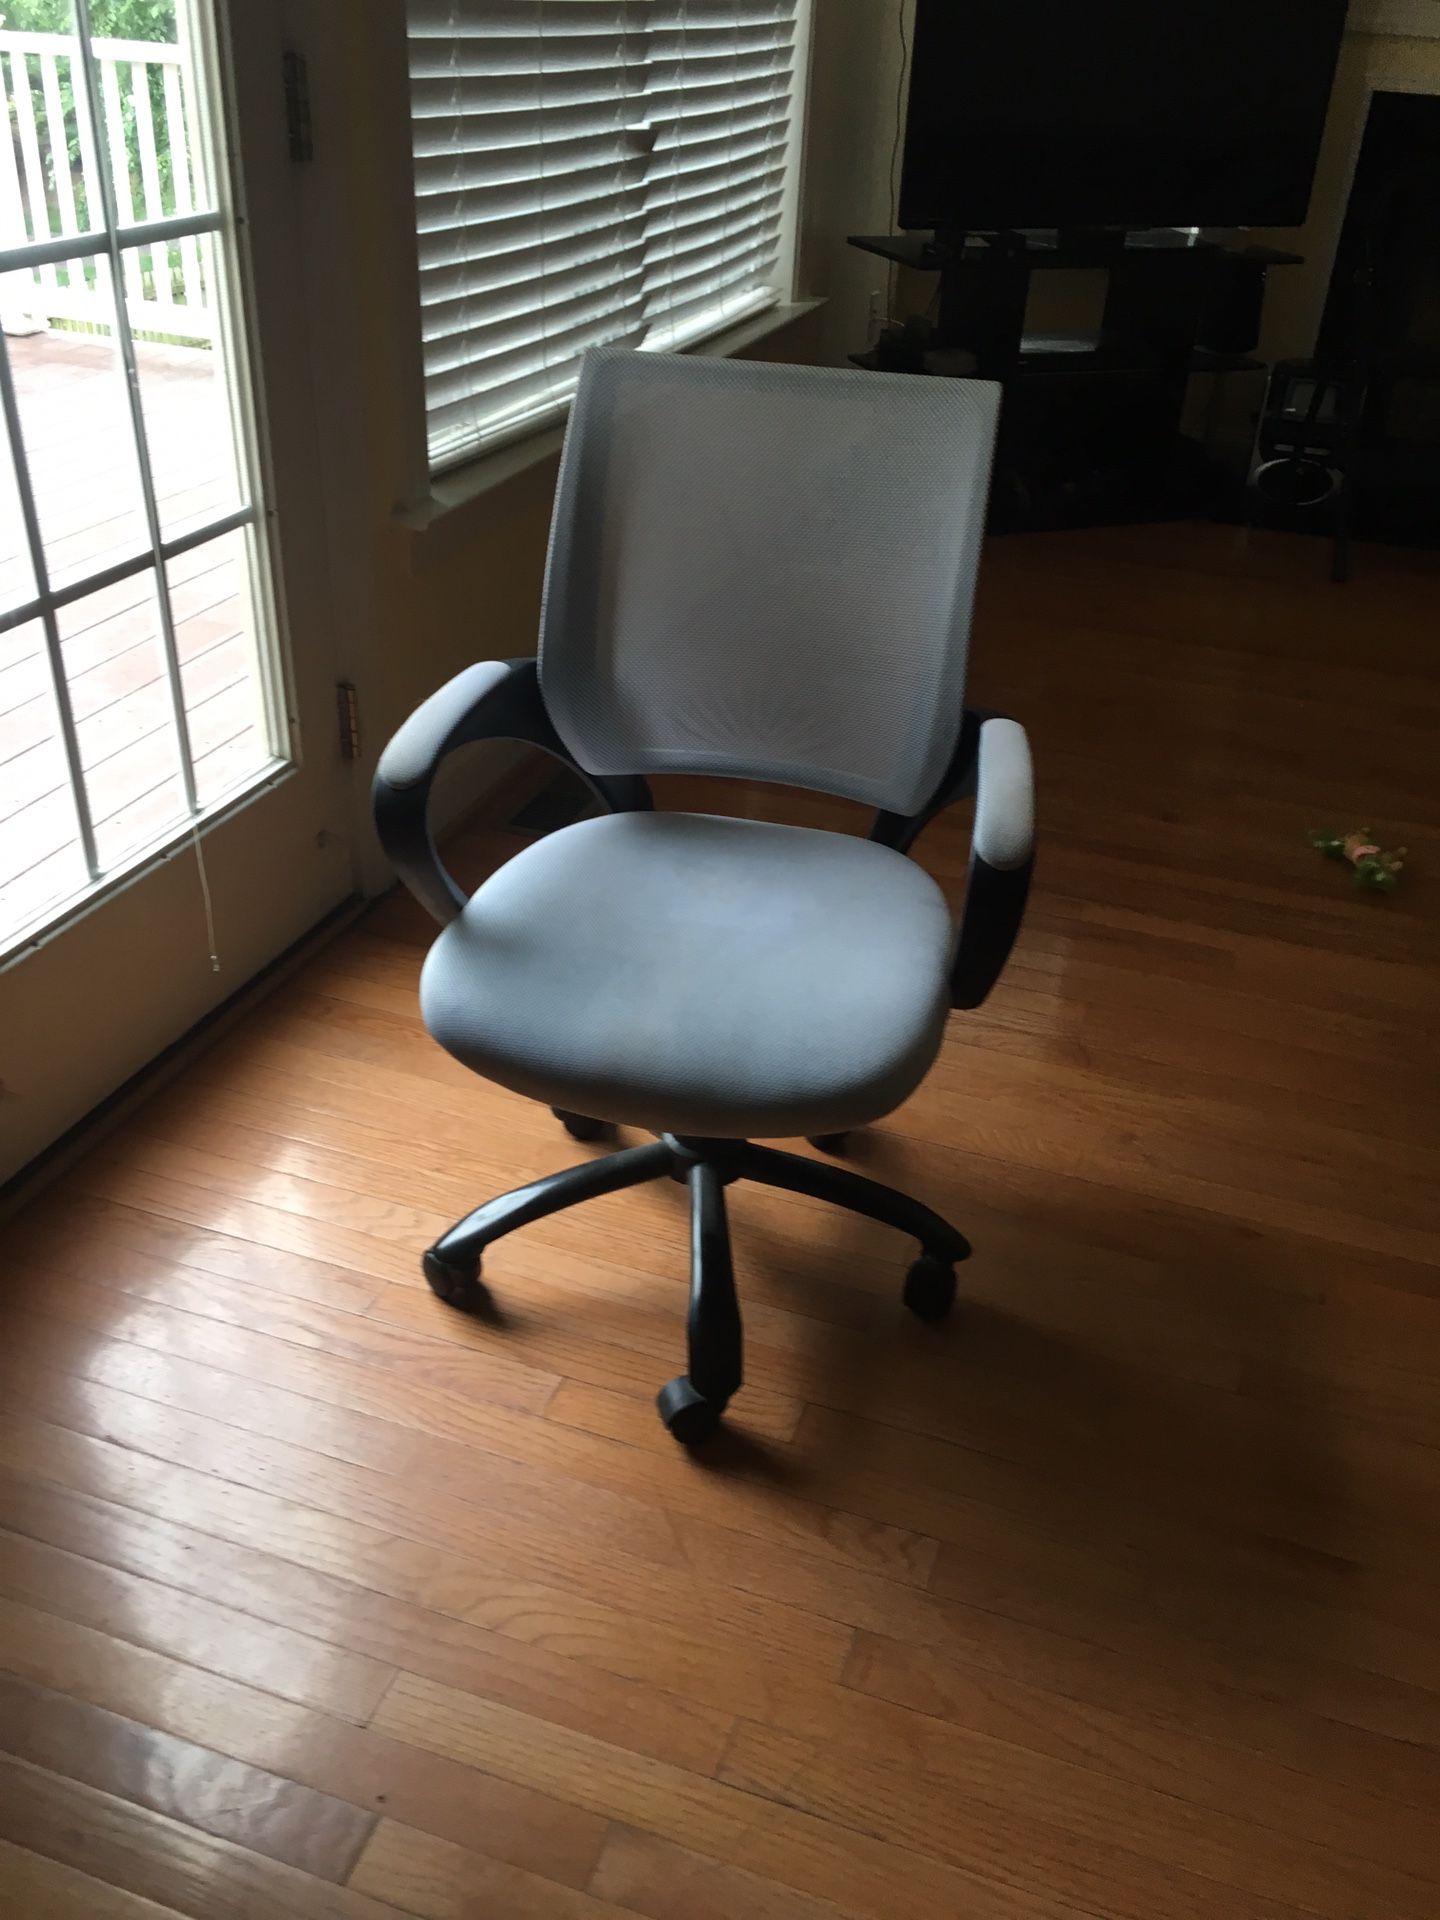 White swivel chair